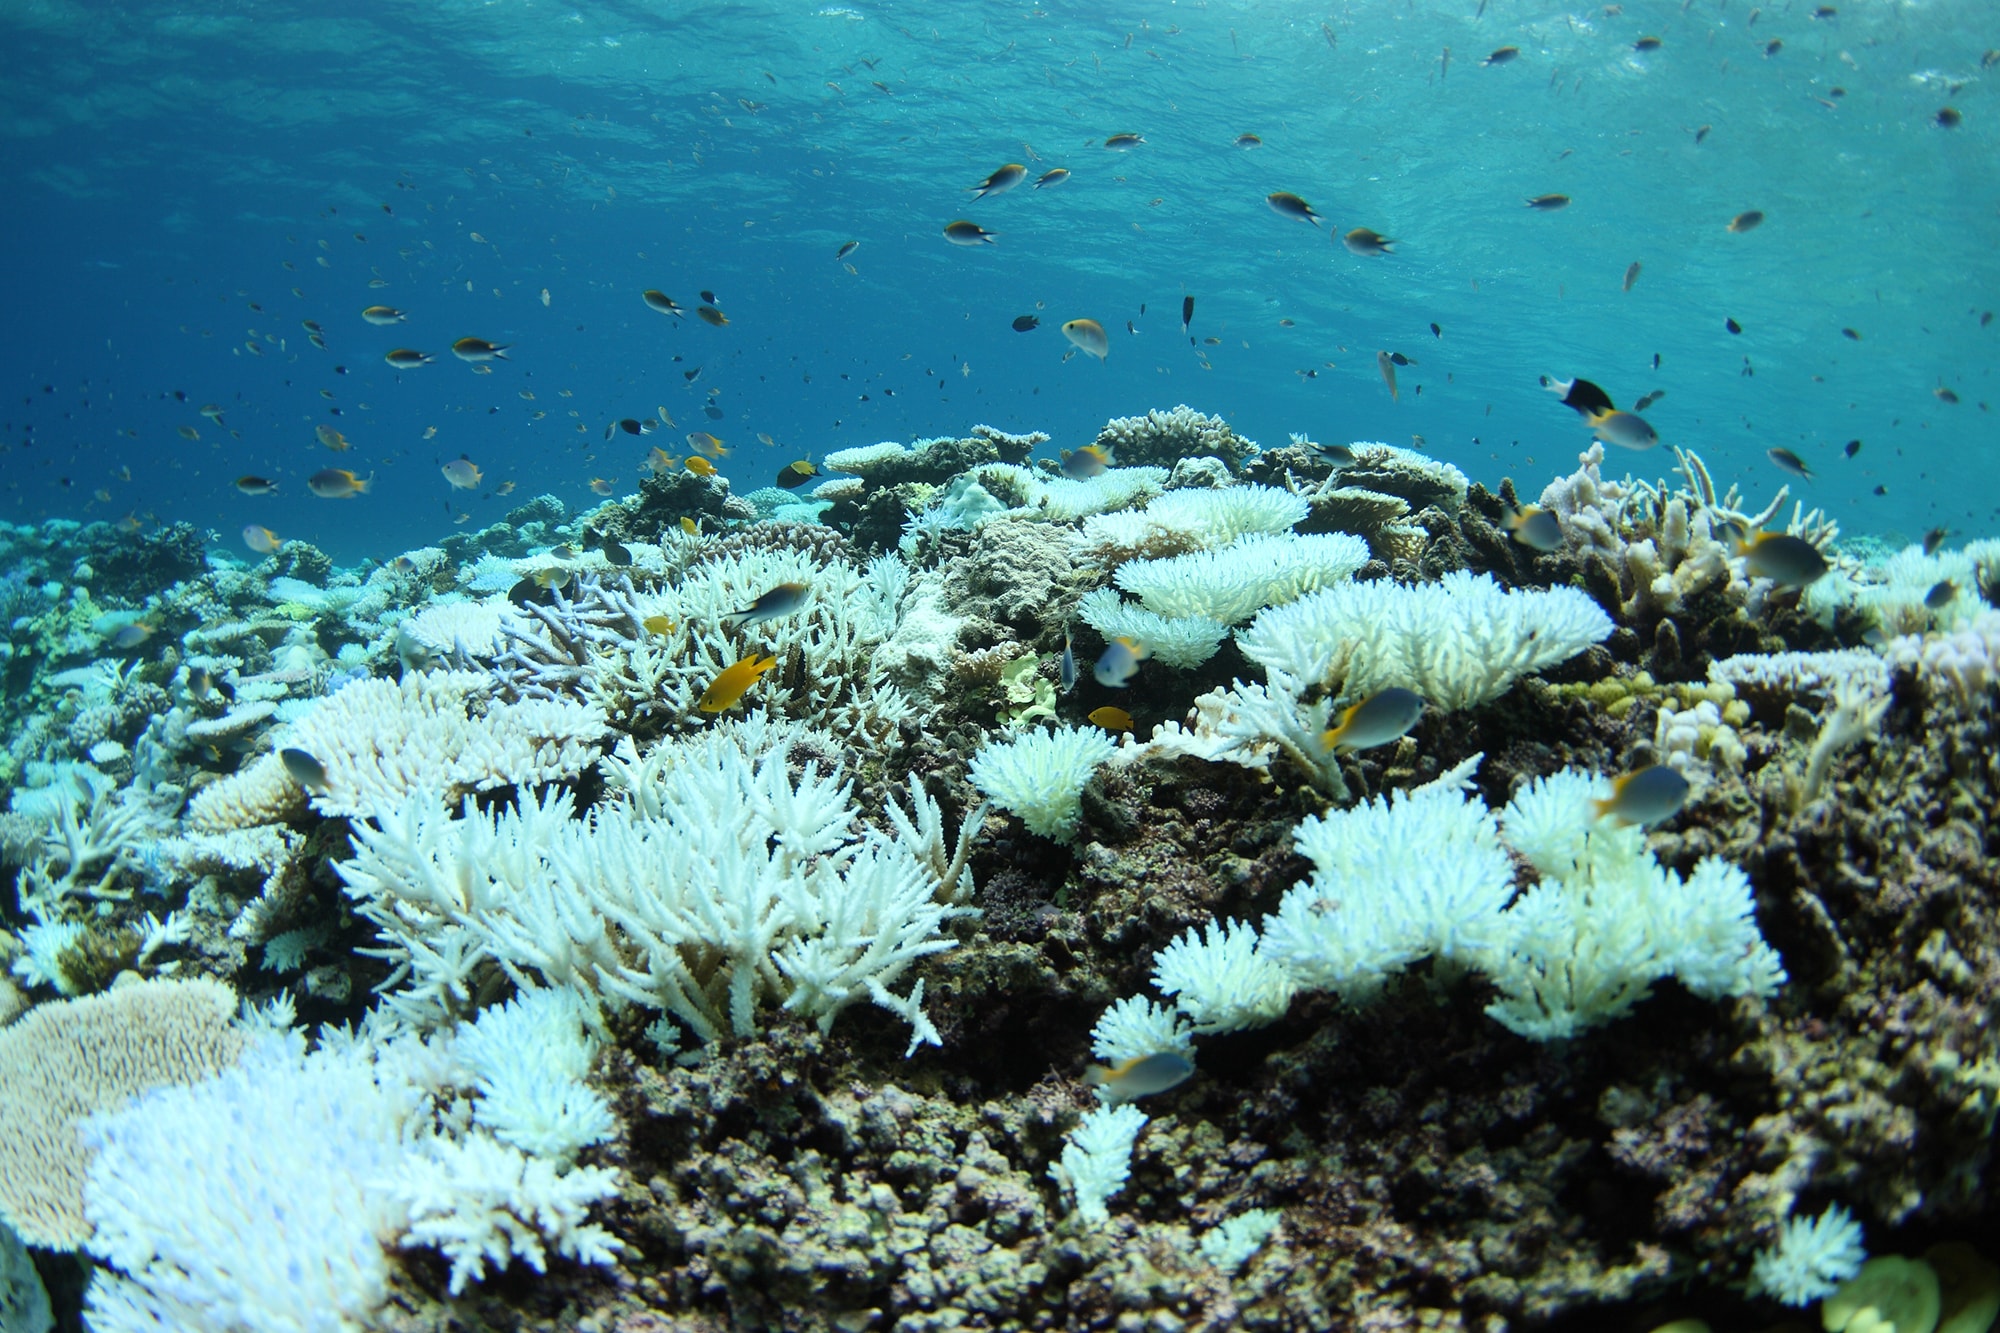 橋を守る技術は サンゴも救えるか シリーズ 企業探訪 エム エム ブリッジ アマナとひらく 自然 科学 のトビラ Nature Science